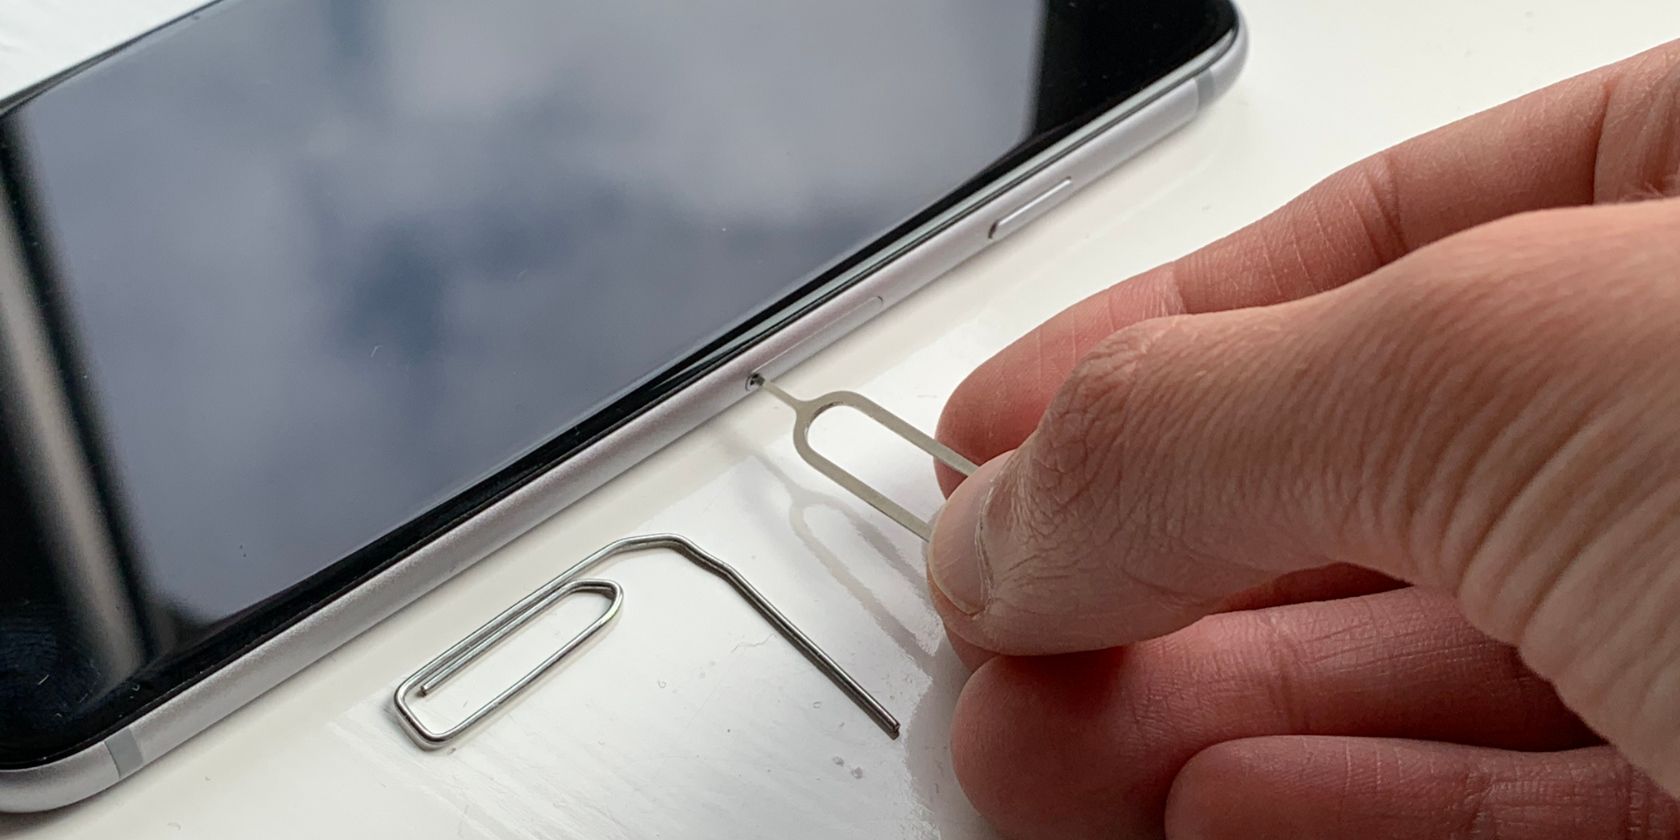 SIM removal tool inserted into slot - Come rimuovere una scheda SIM da un iPhone